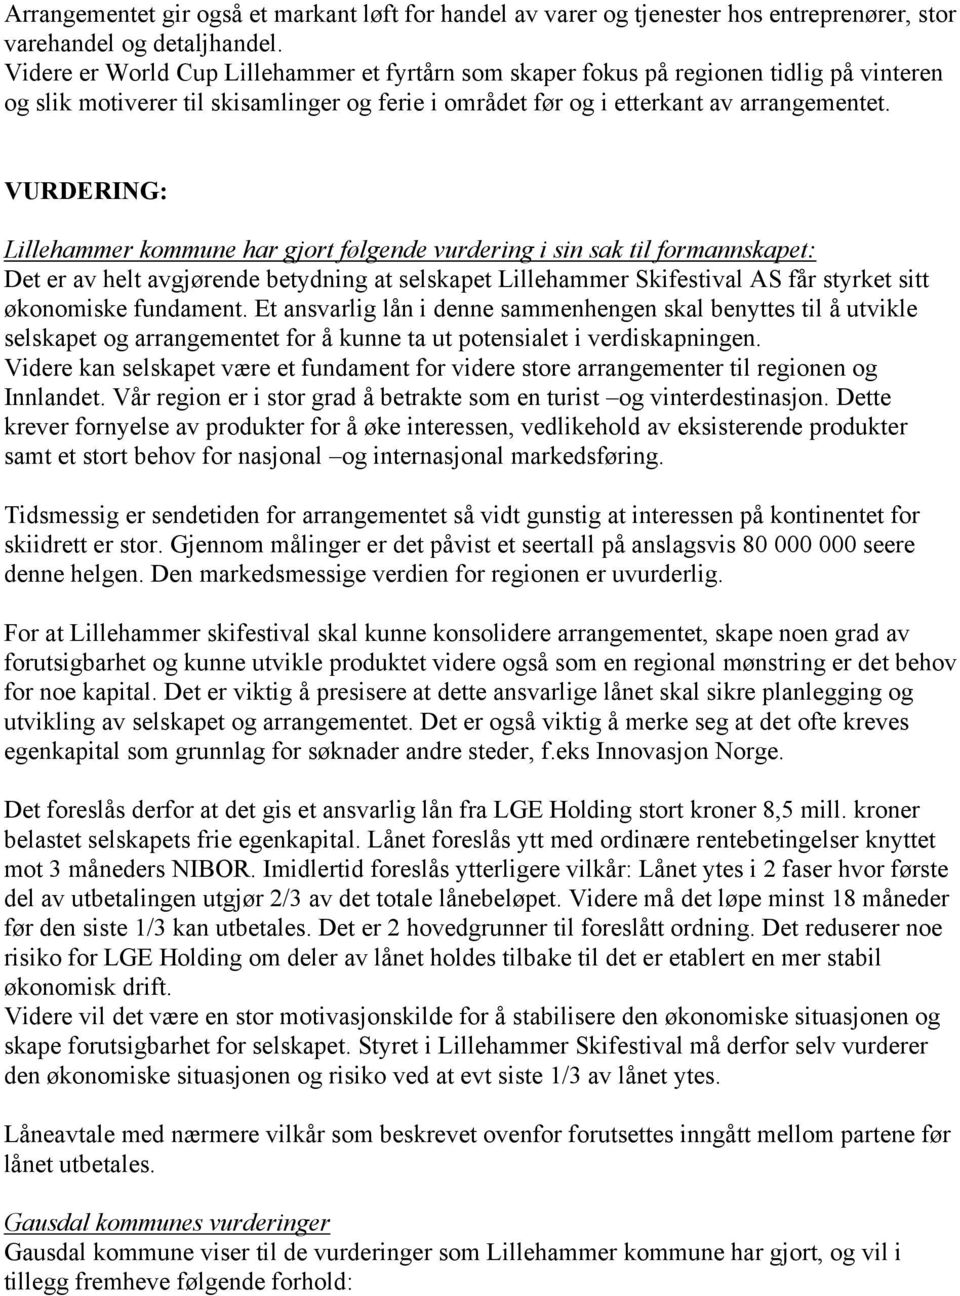 VURDERING: Lillehammer kommune har gjort følgende vurdering i sin sak til formannskapet: Det er av helt avgjørende betydning at selskapet Lillehammer Skifestival AS får styrket sitt økonomiske